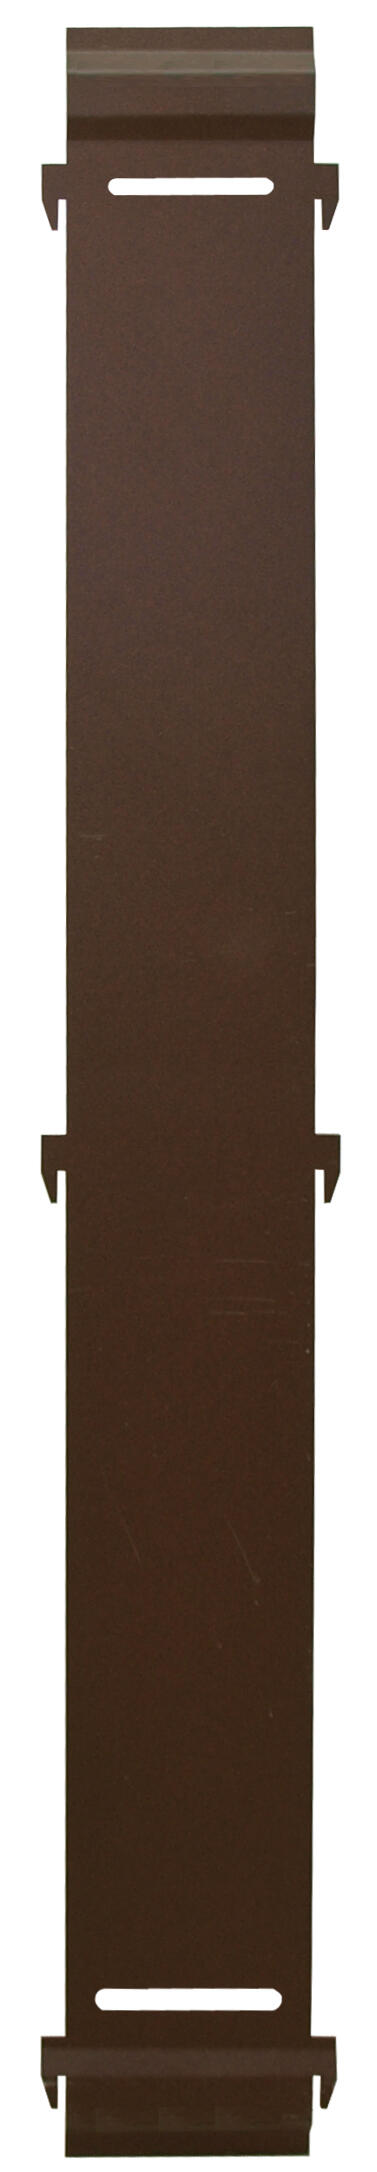 Panel remate valla acero galvanizado ciego marrón 94x10 cm